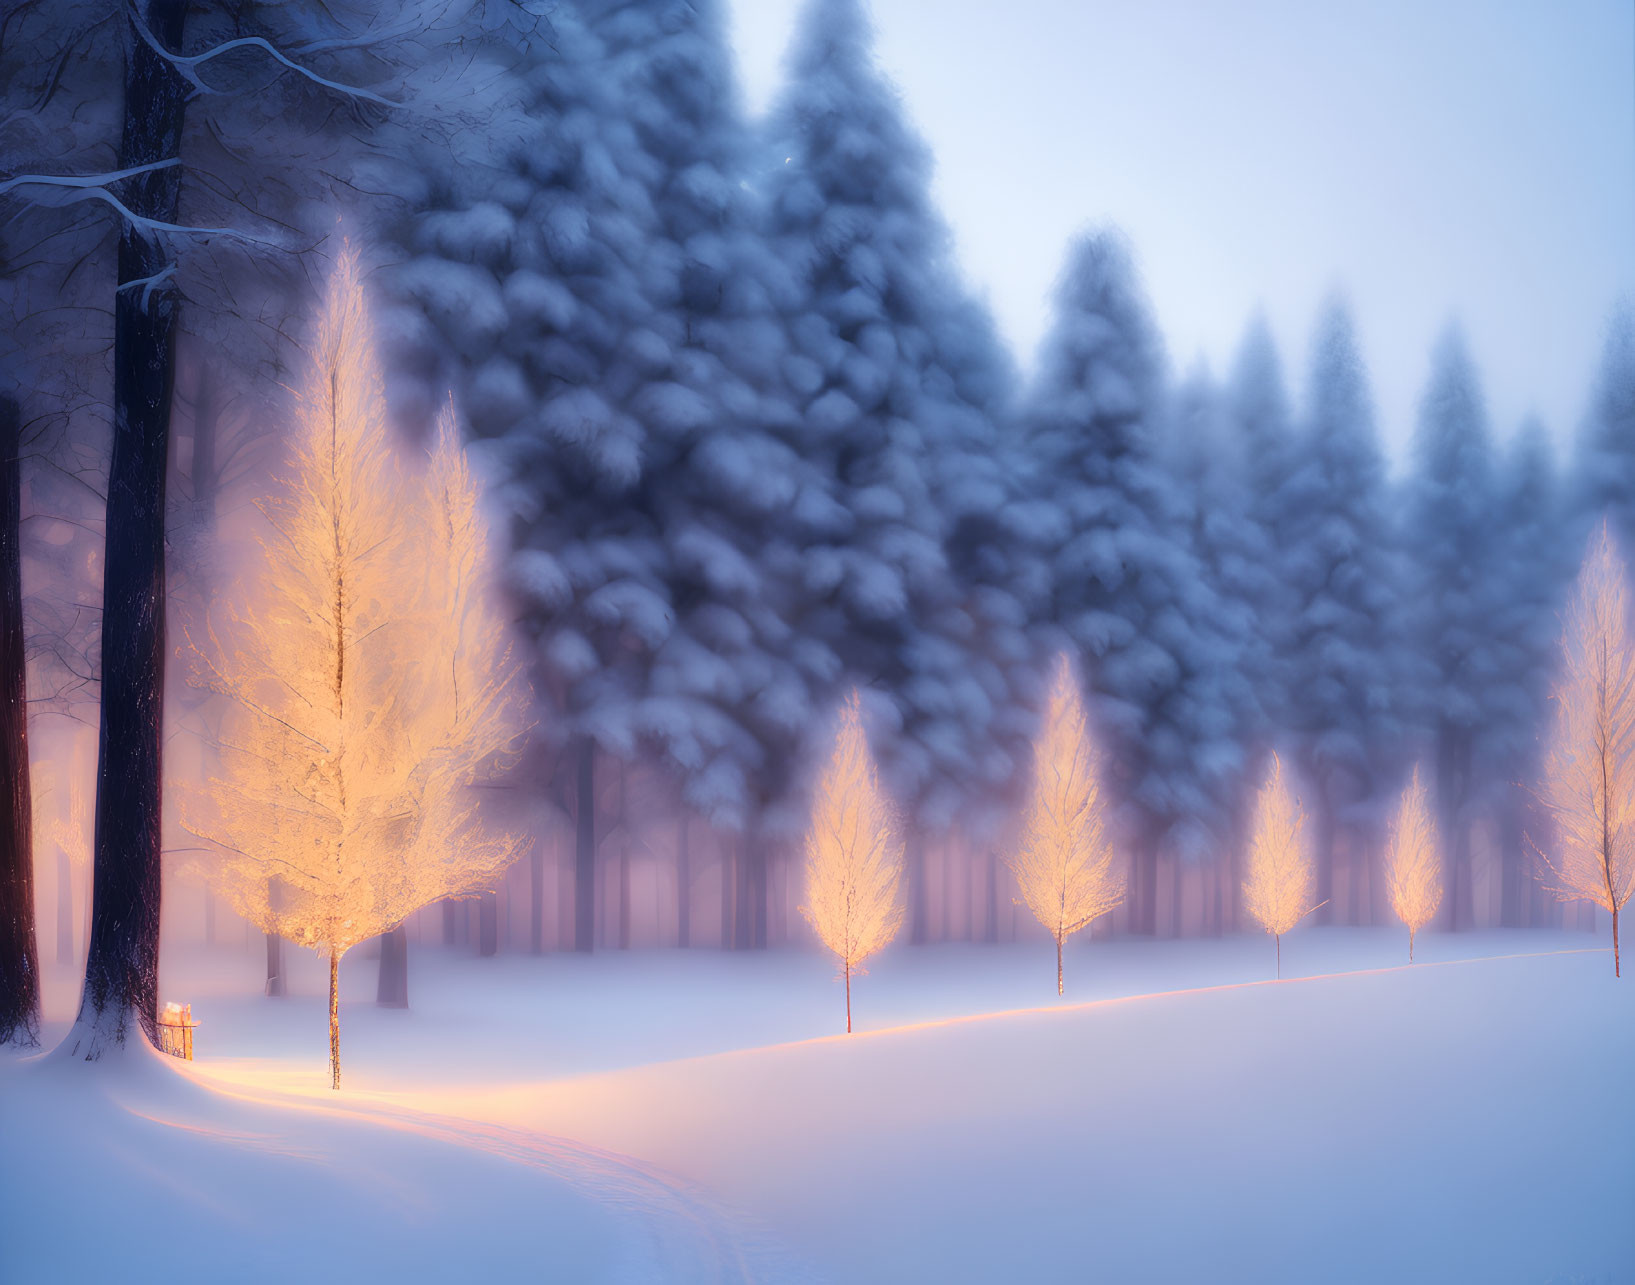 Twilight winter landscape: illuminated trees on snow